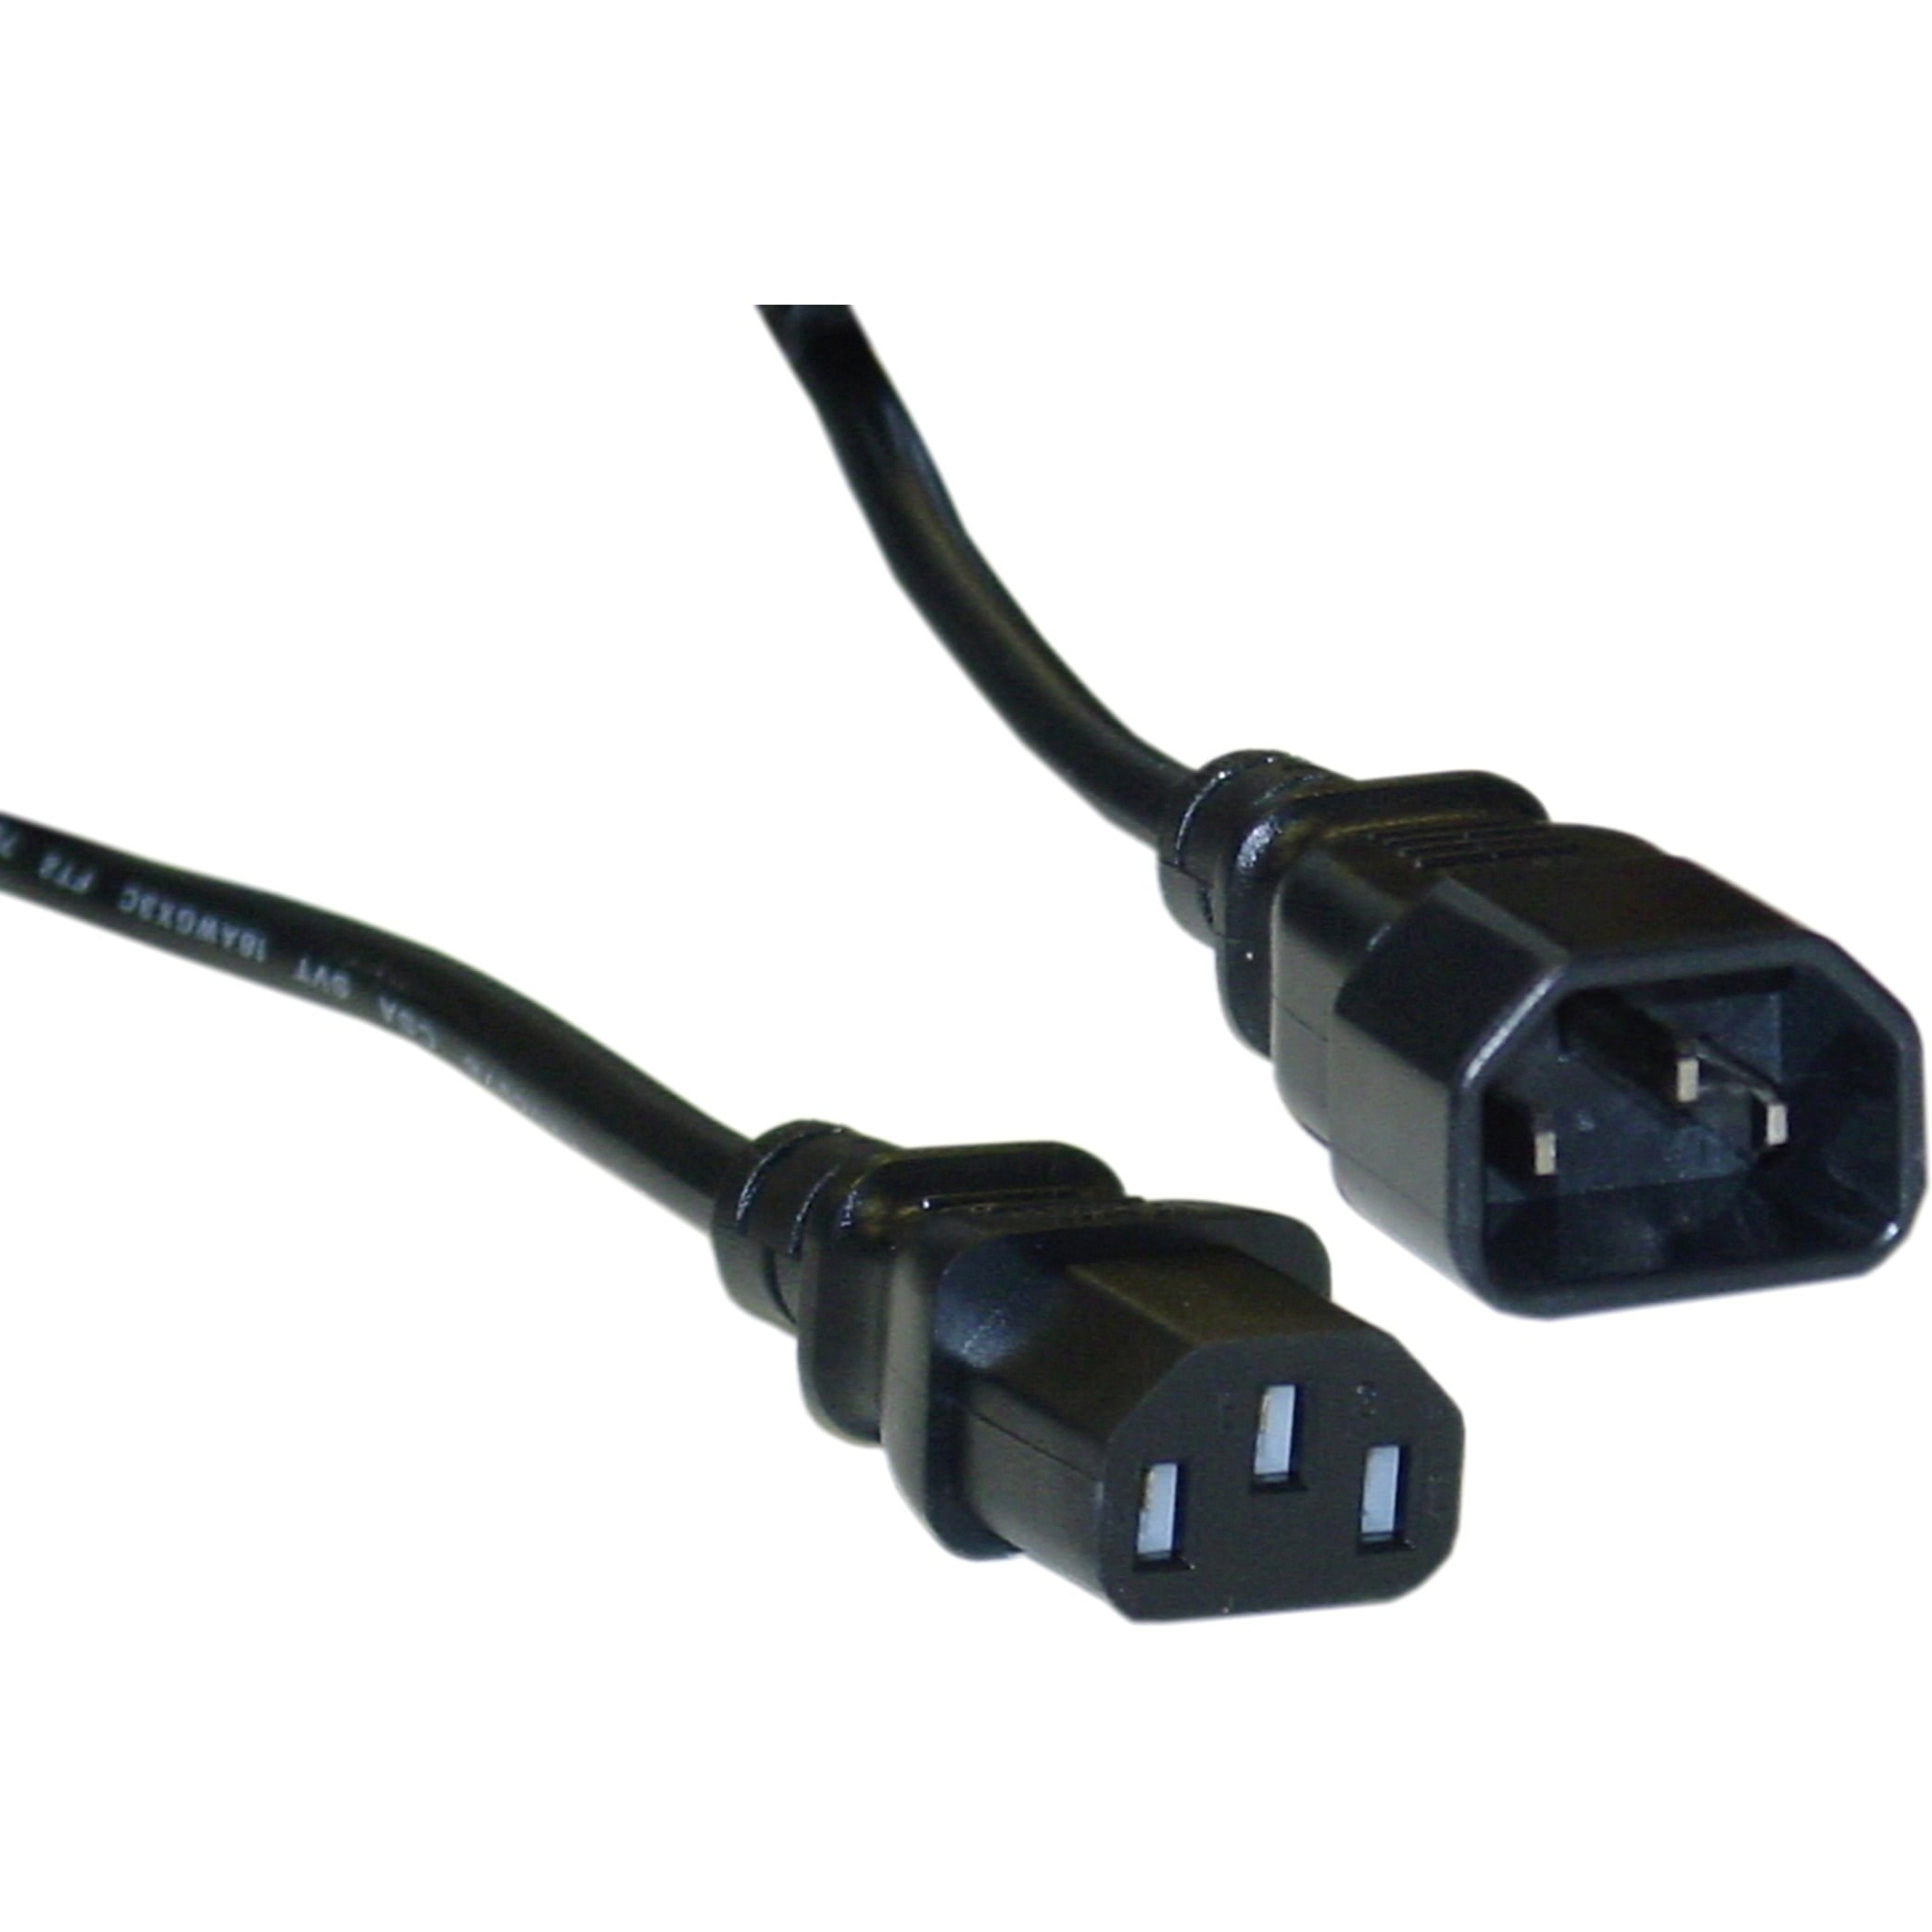 Кабель ATCOM cee 7/7 - IEC c13 (at10119) 1.8 м. Cabeus PC-186-VDE-1.8M кабель питания компьютера (Schuko+c13) (3x0.75), 1.8м (2100k). Шнур питания с заземлением IEC 60320 c14/Schuko. Hyperline IEC 320 c14. Кабель питания 5.5